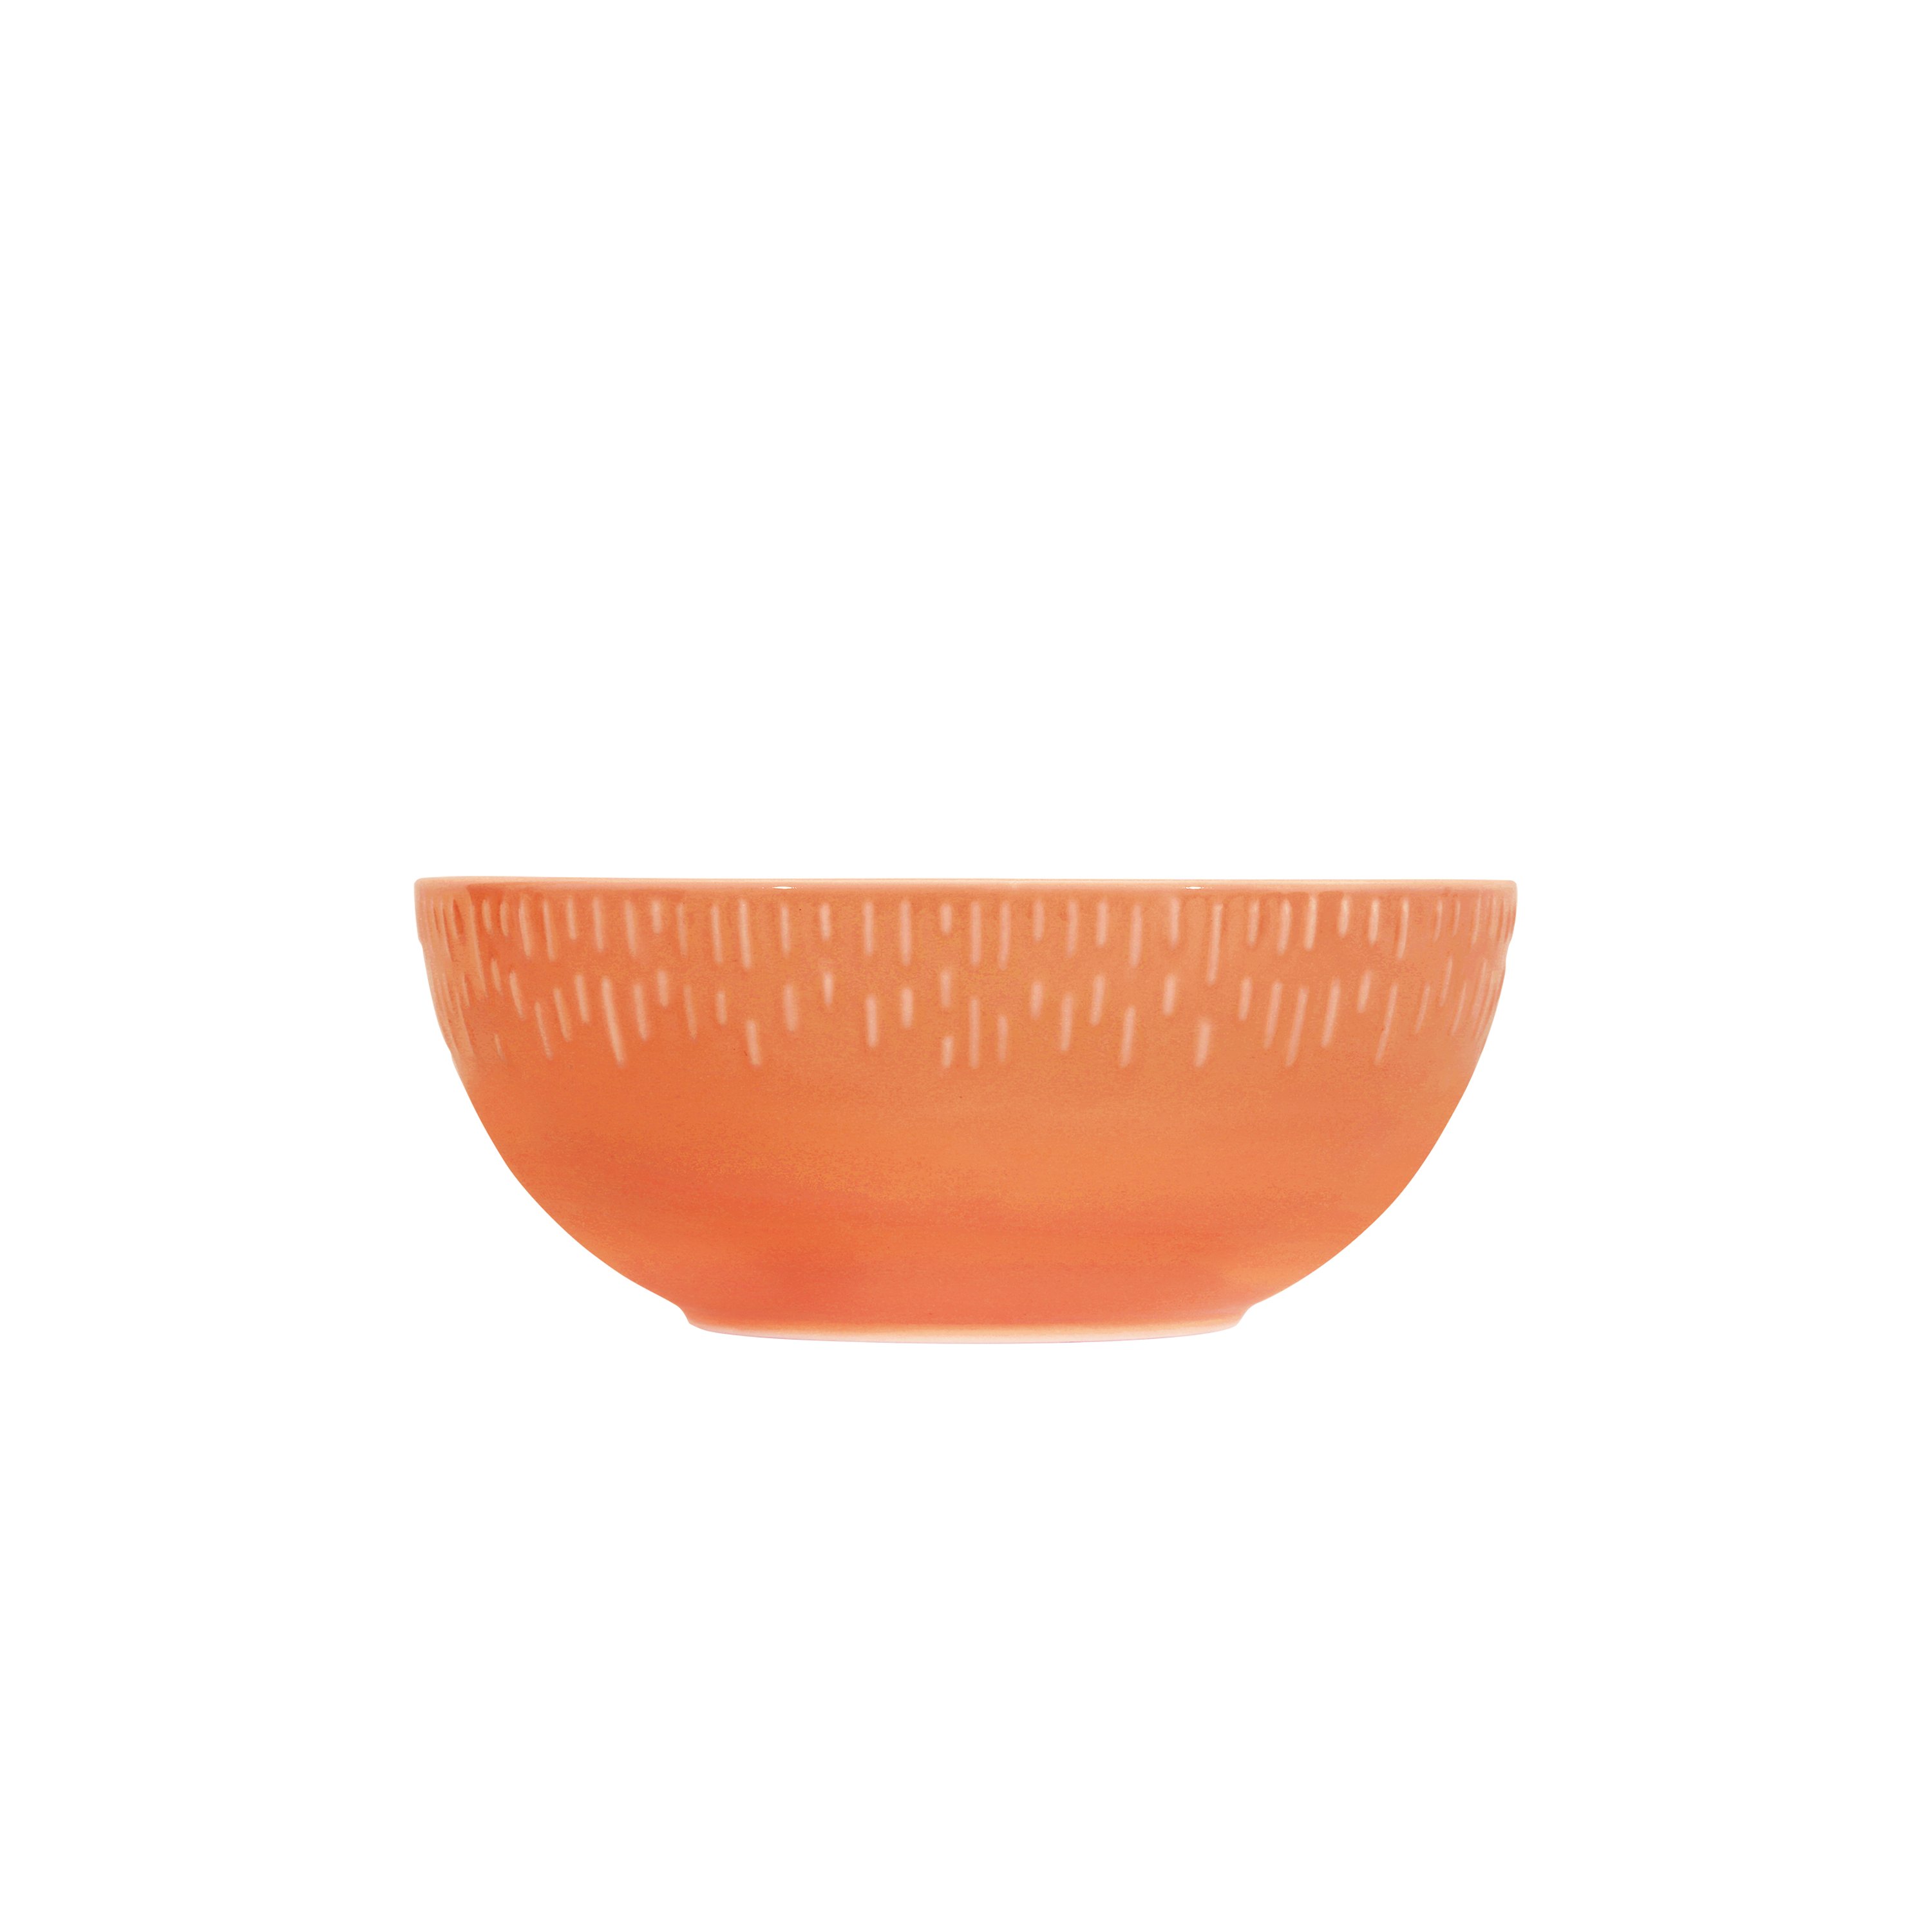 Aida - Life in Colour - Confetti - Apricot saladbowl w/relief porcelain (13330) - Hjemme og kjøkken